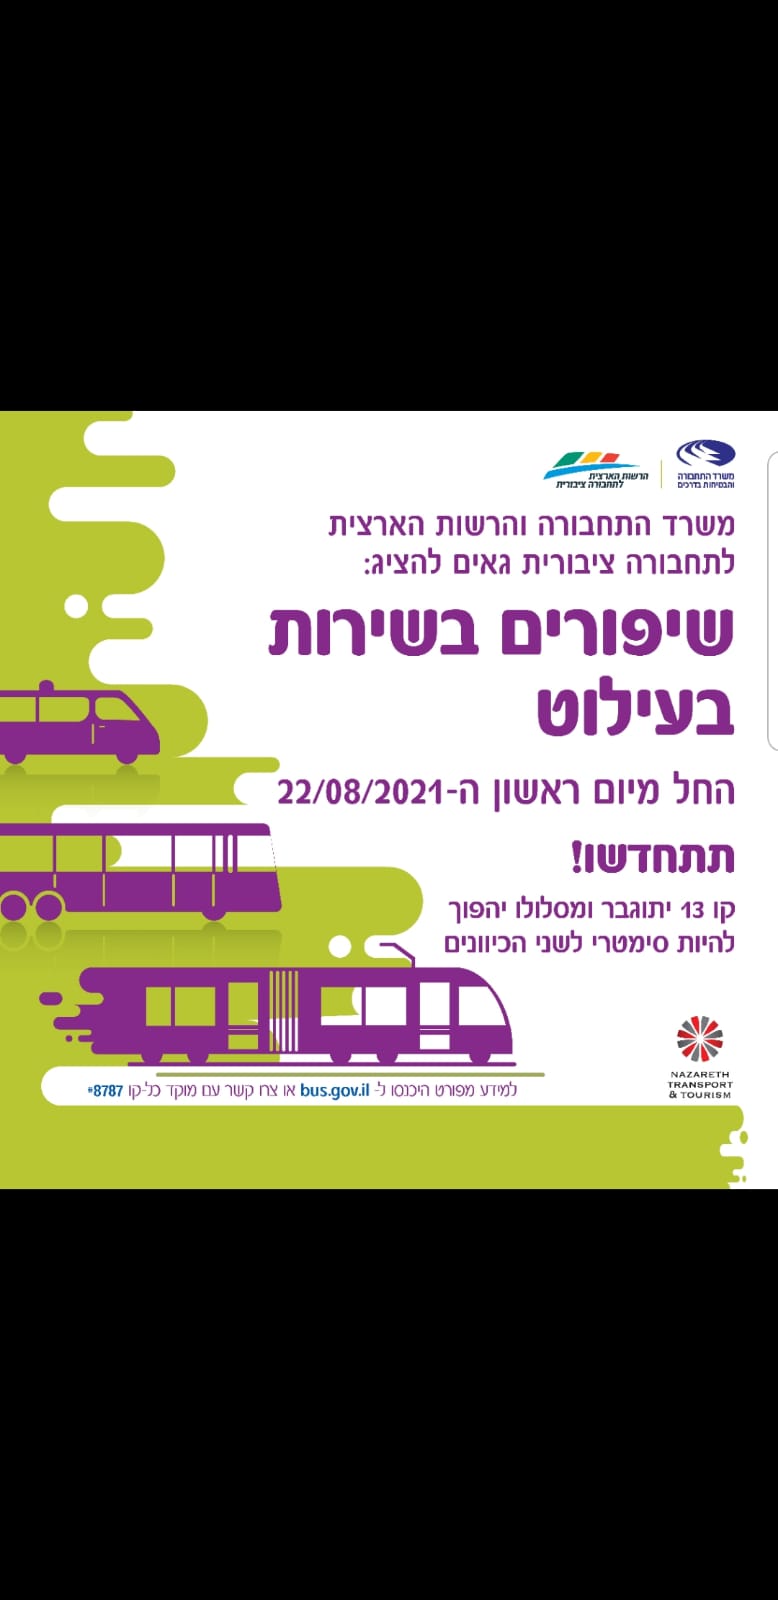 اضافة خدمات وتحسين مسار السفر لخط 13 (الناصره-عيلوط)